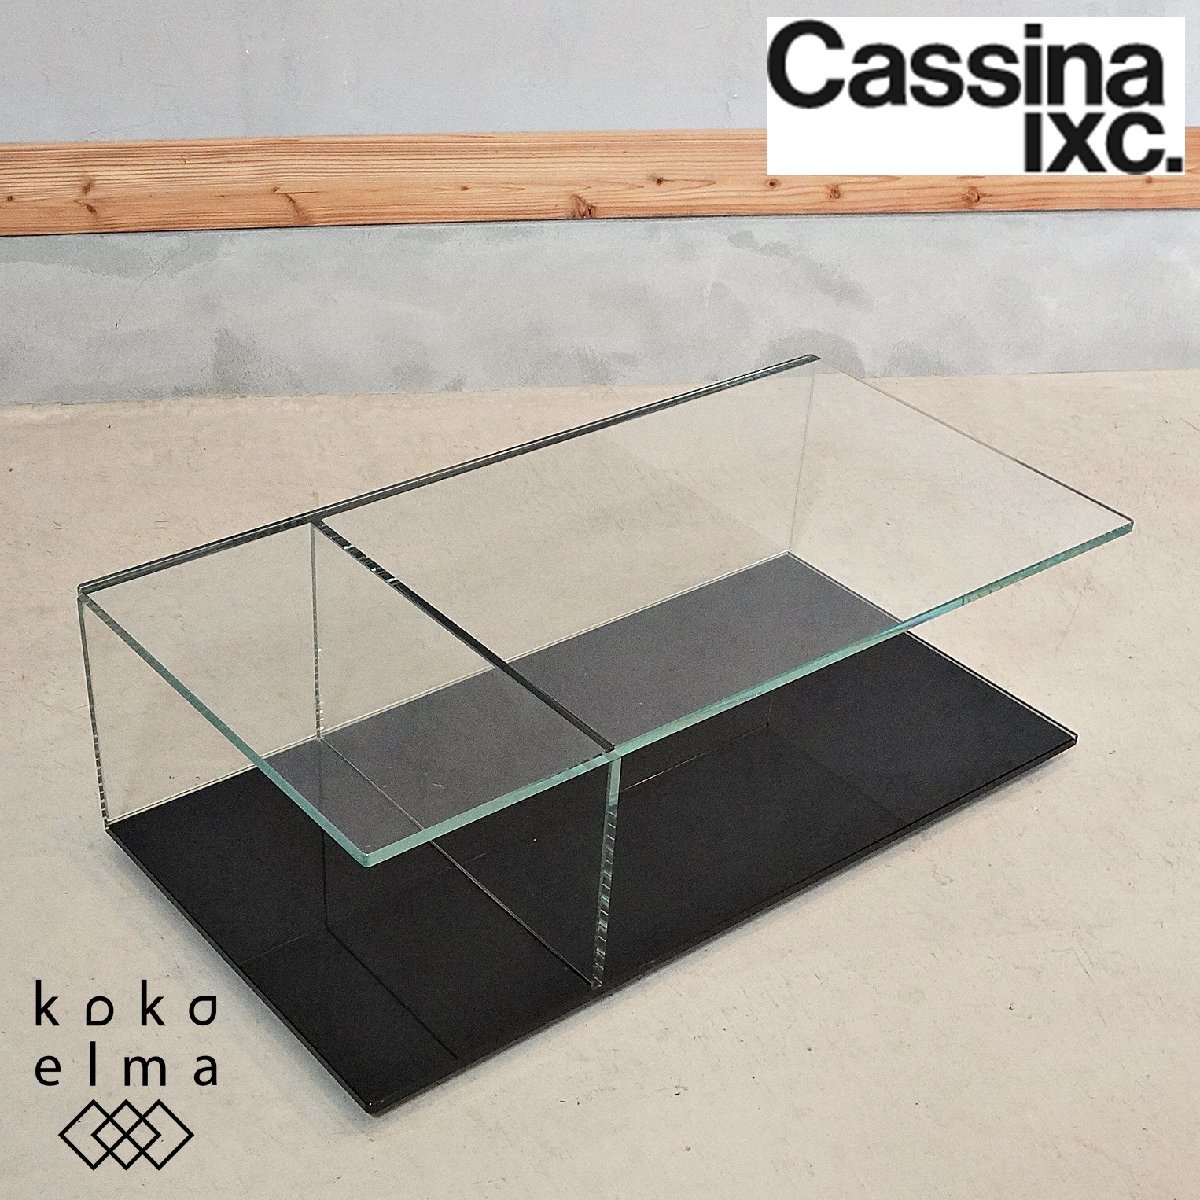 Cassina ixc. カッシーナ 269 MEX ローテーブル レクタングラータイプ ガラス リビングテーブル ピエロ・リッソーニ 高級家具 DI533